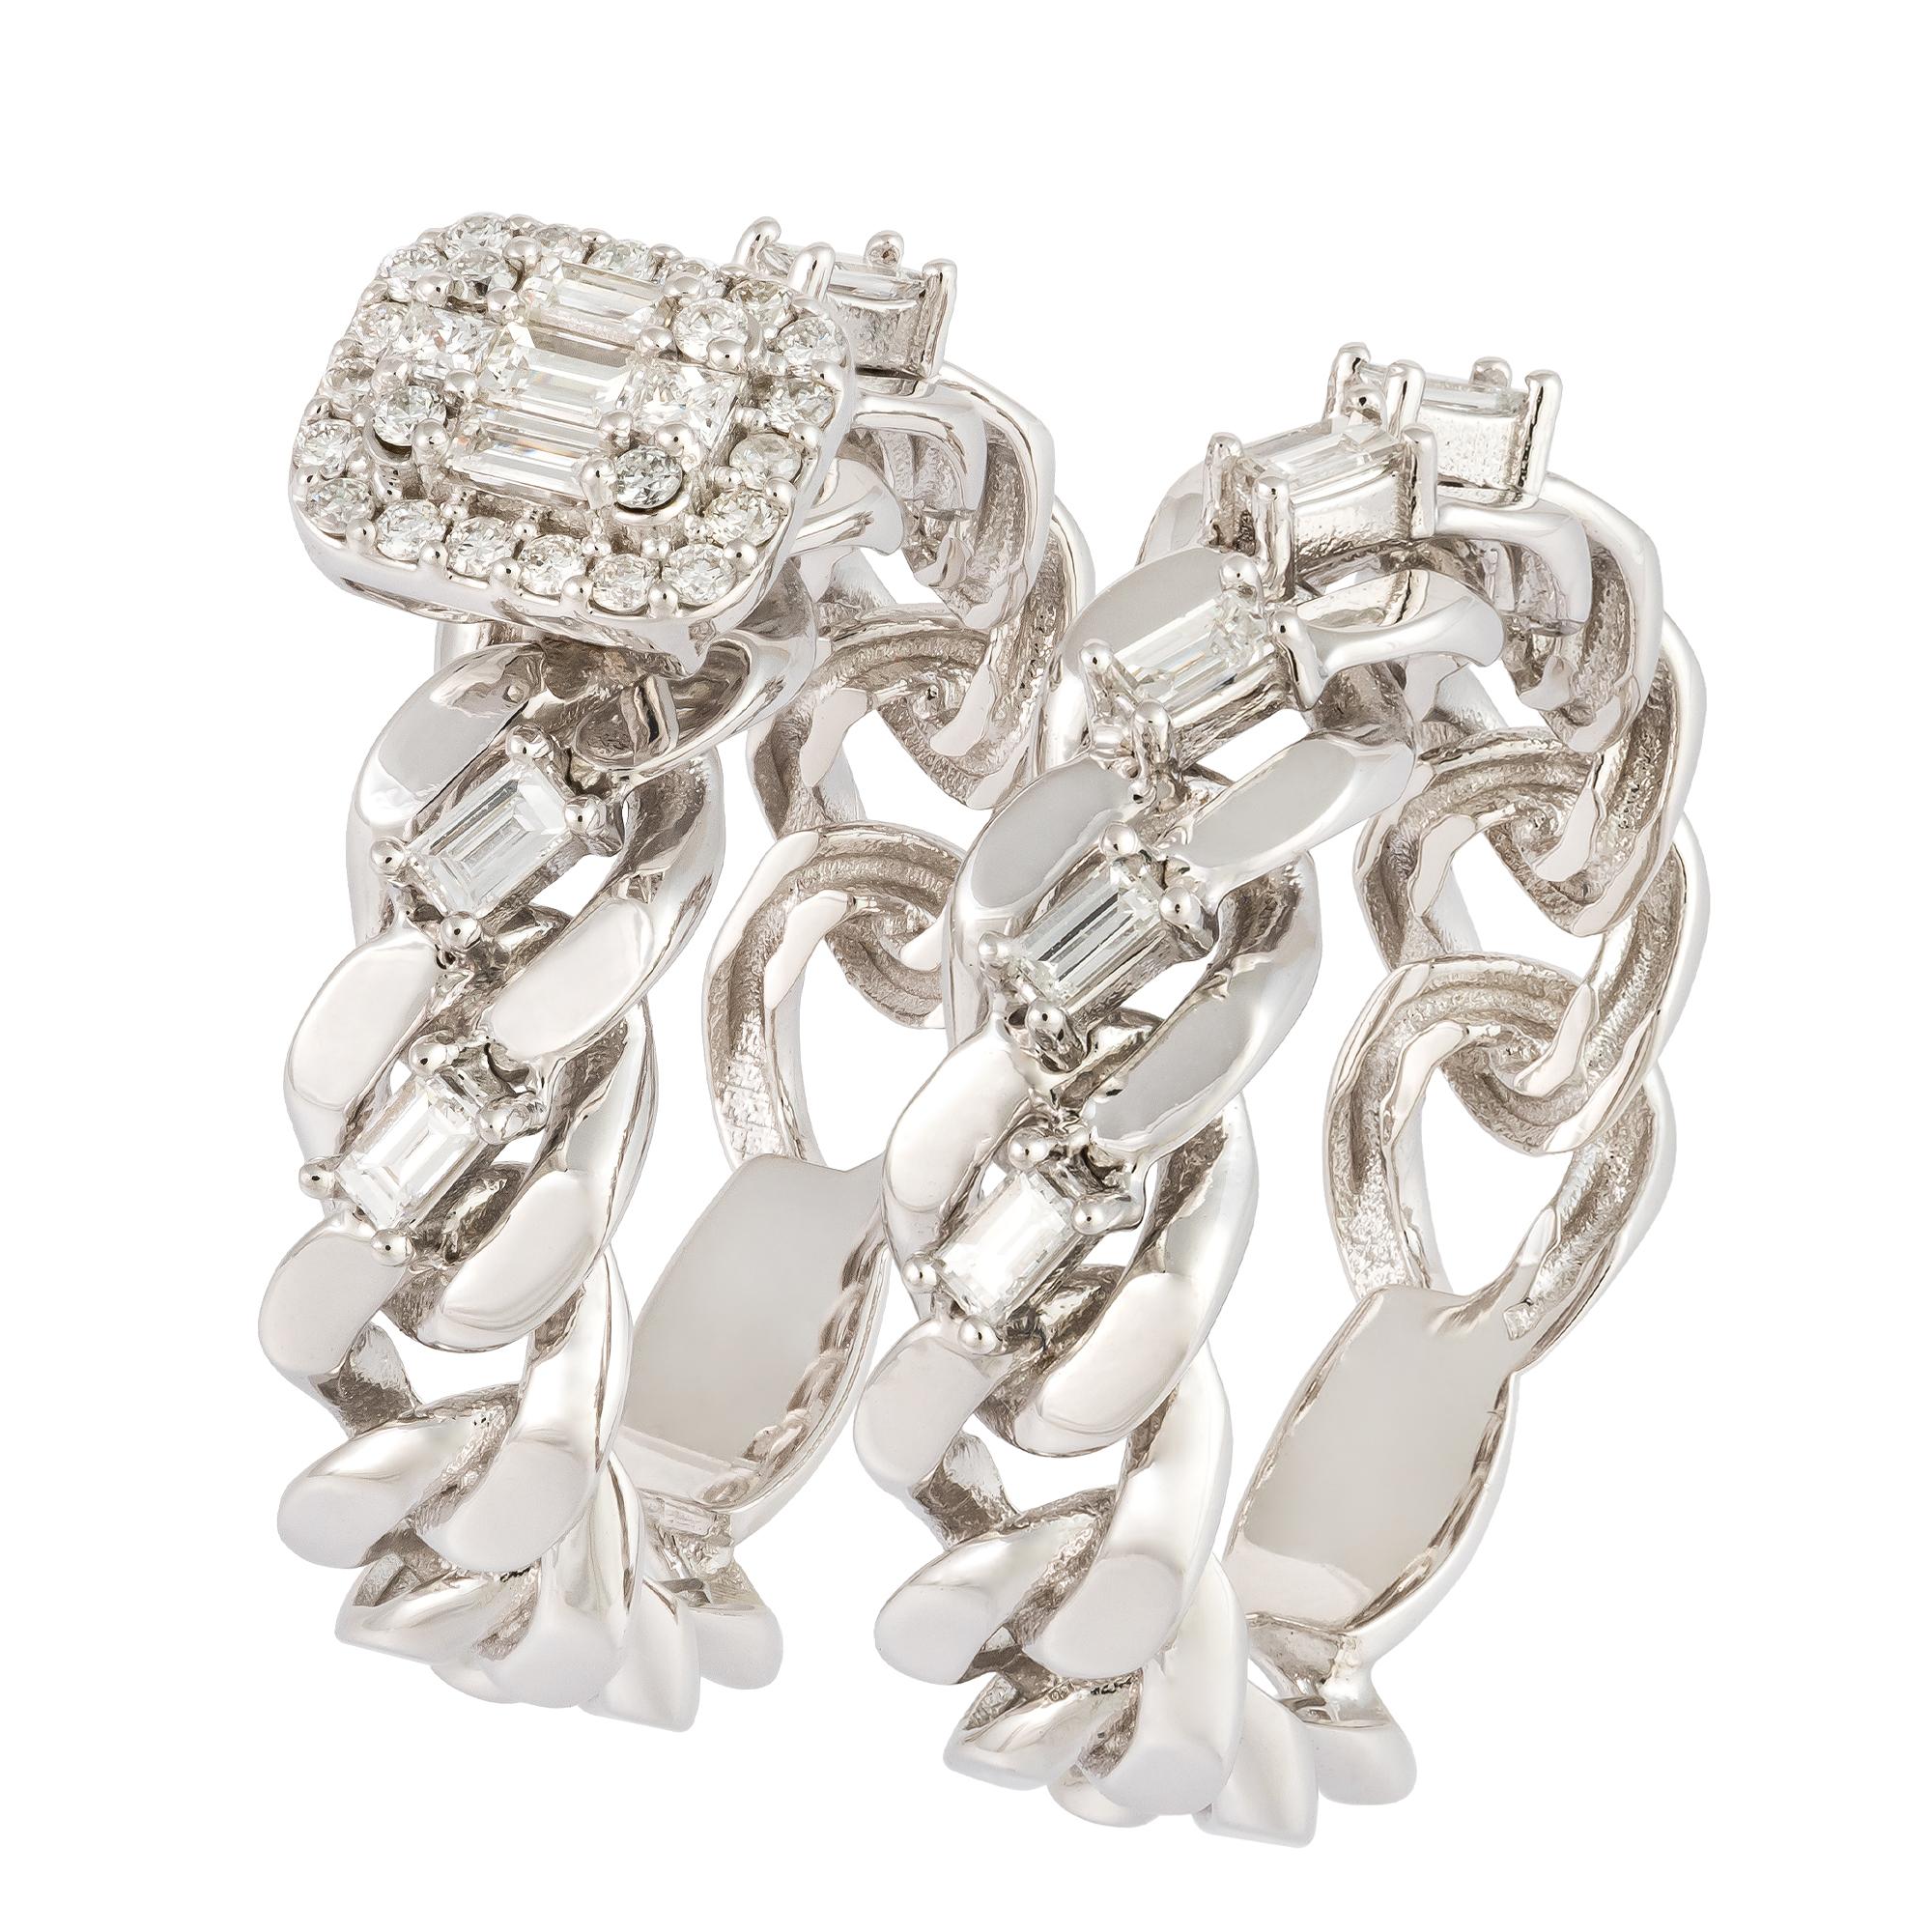 For Sale:  Breathtaking White 18K Gold White Diamond Ring For Her 2